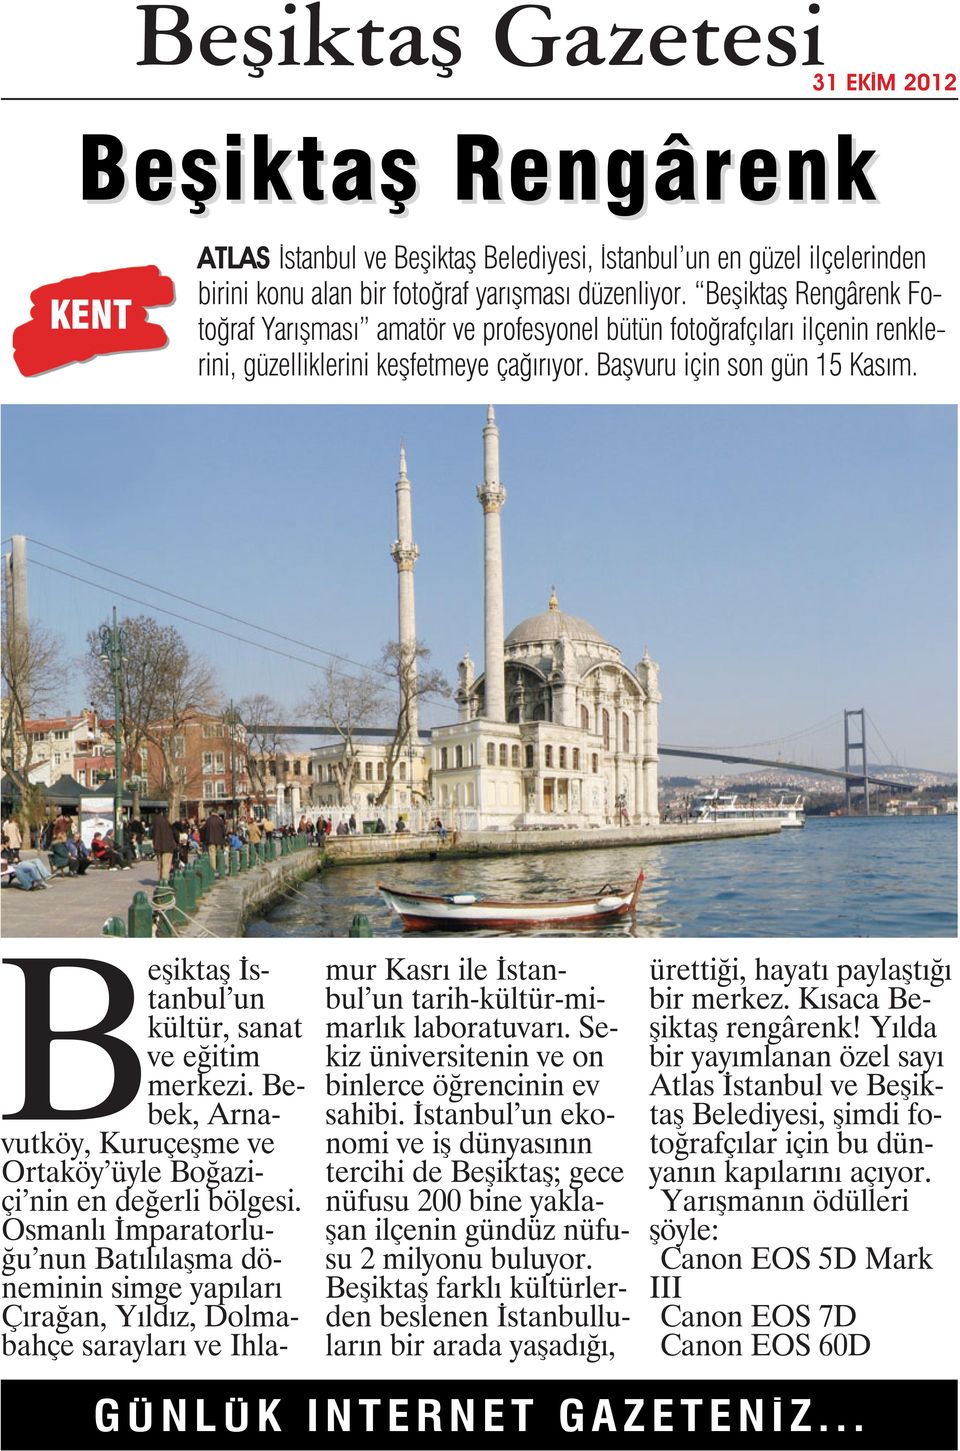 Beşiktaş İstanbul un kültür, sanat ve eğitim merkezi. Bebek, Arnavutköy, Kuruçeşme ve Ortaköy üyle Boğaziçi nin en değerli bölgesi.